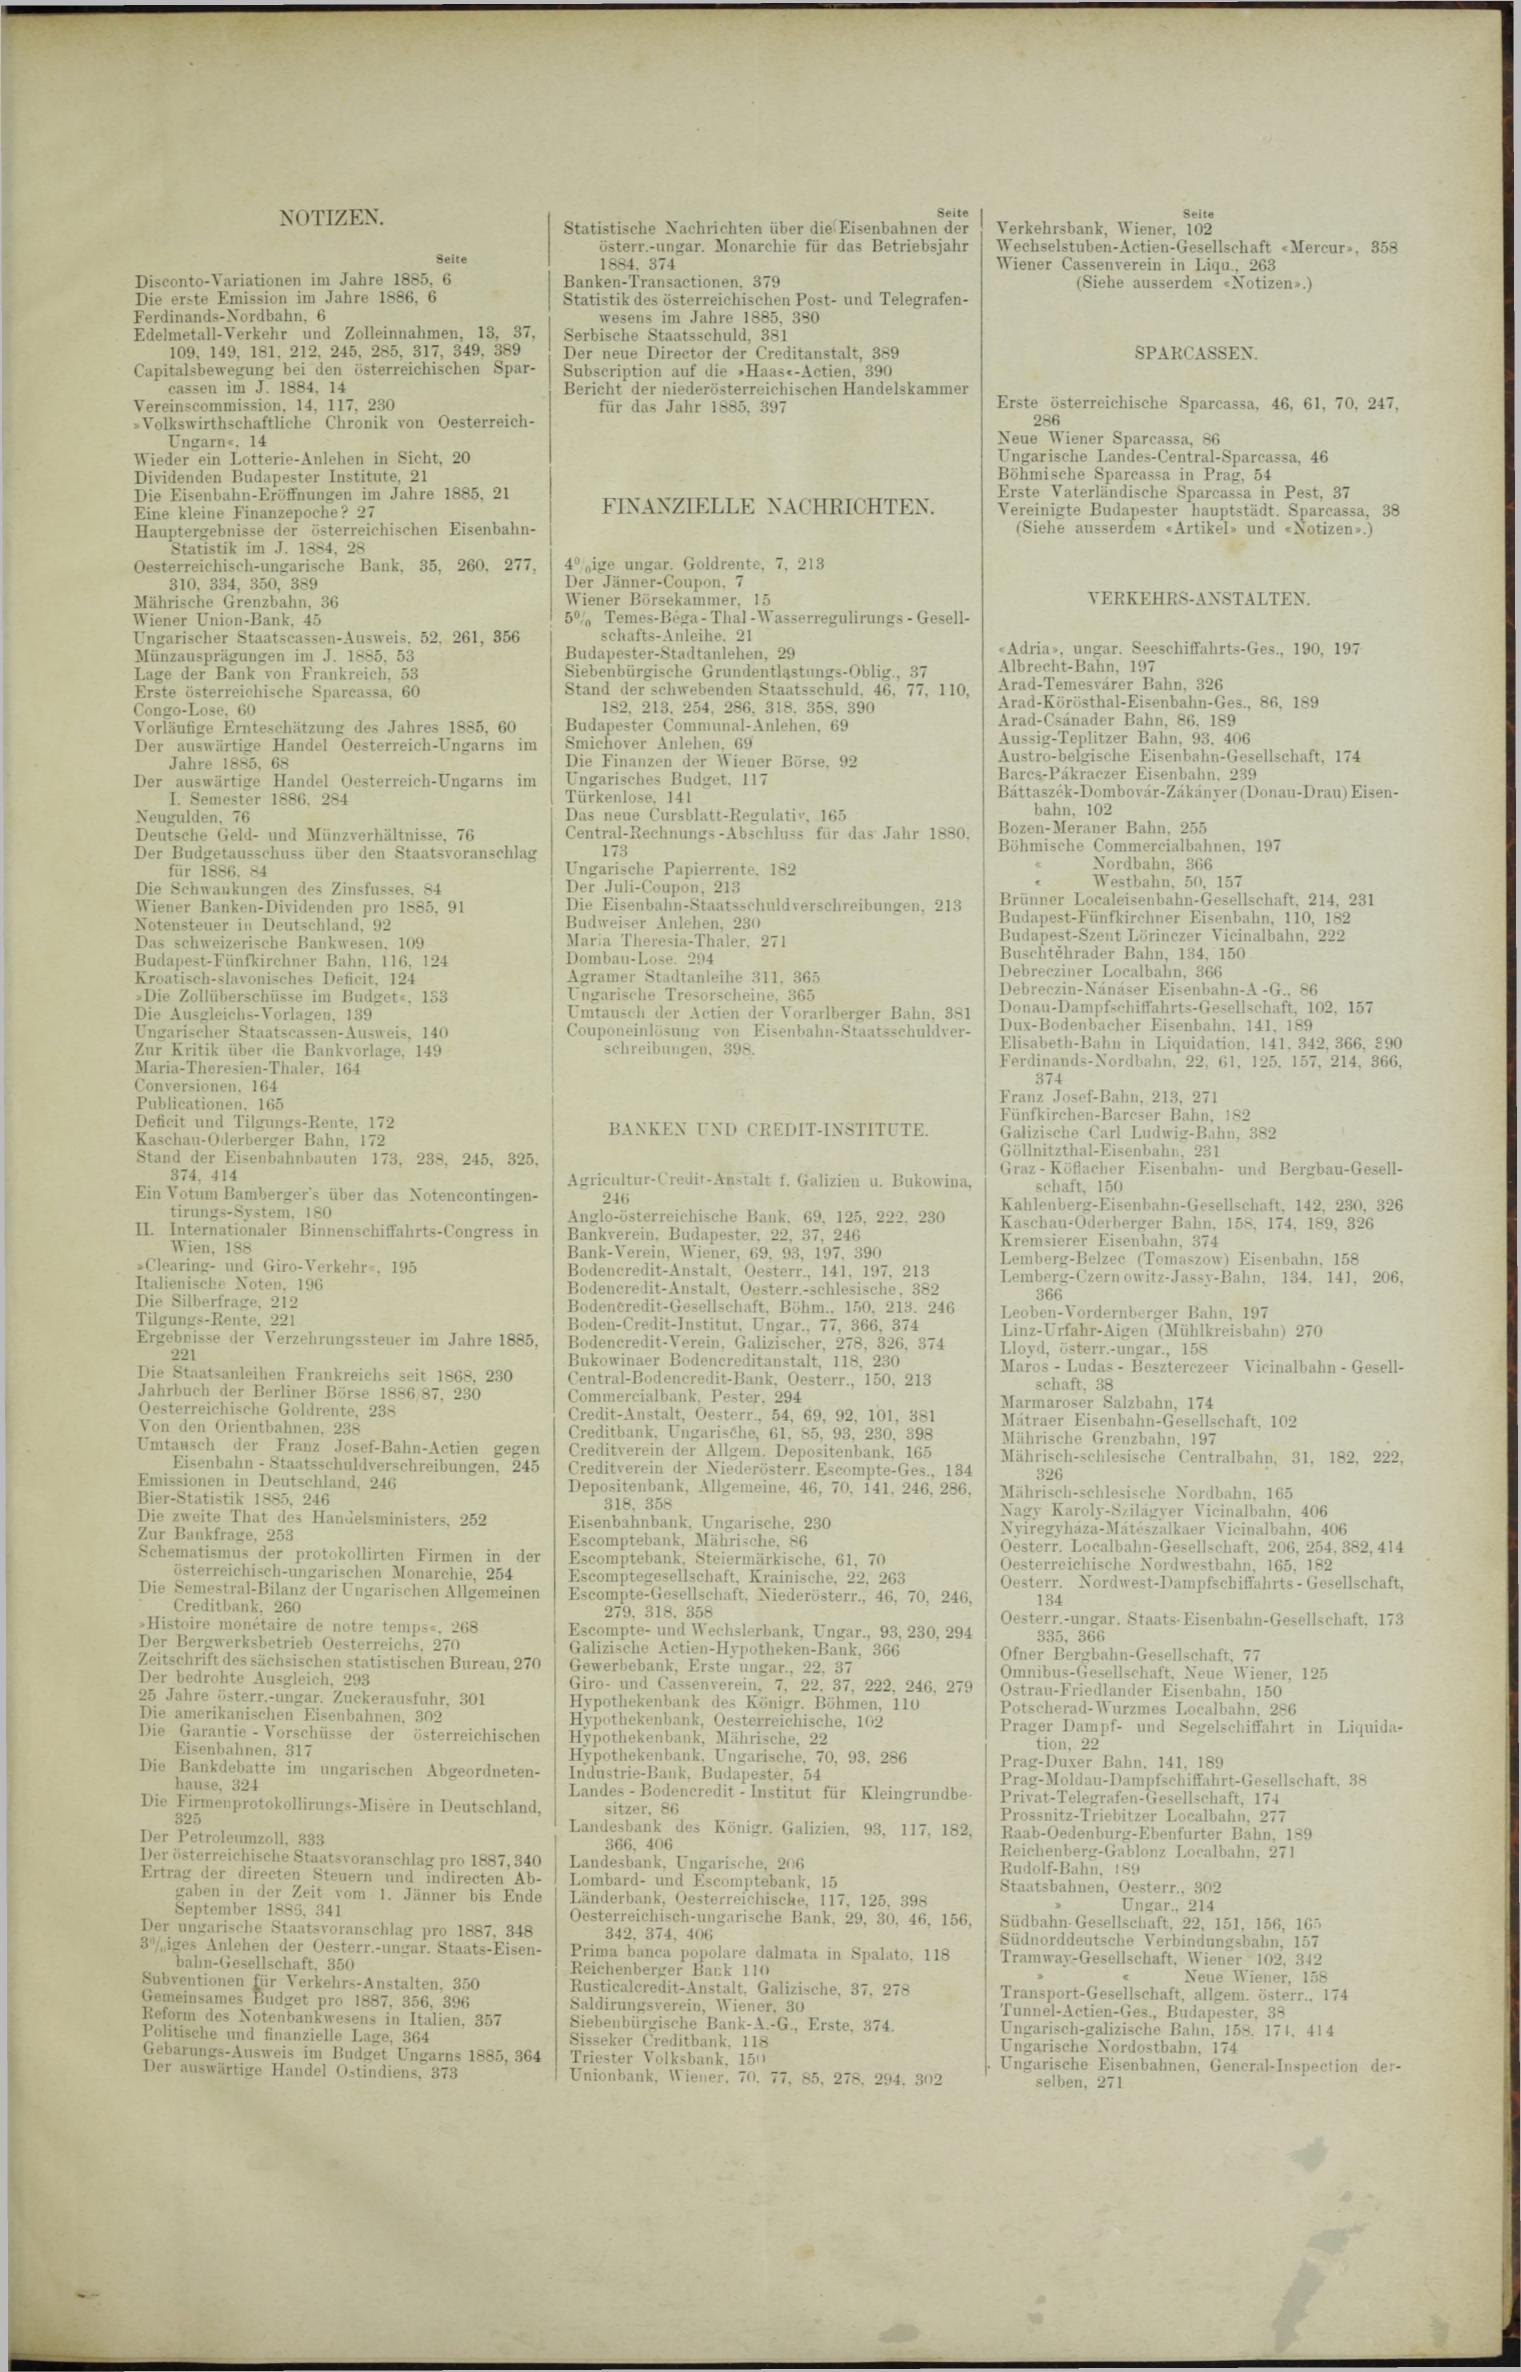 Der Tresor 25.03.1886 - Seite 11